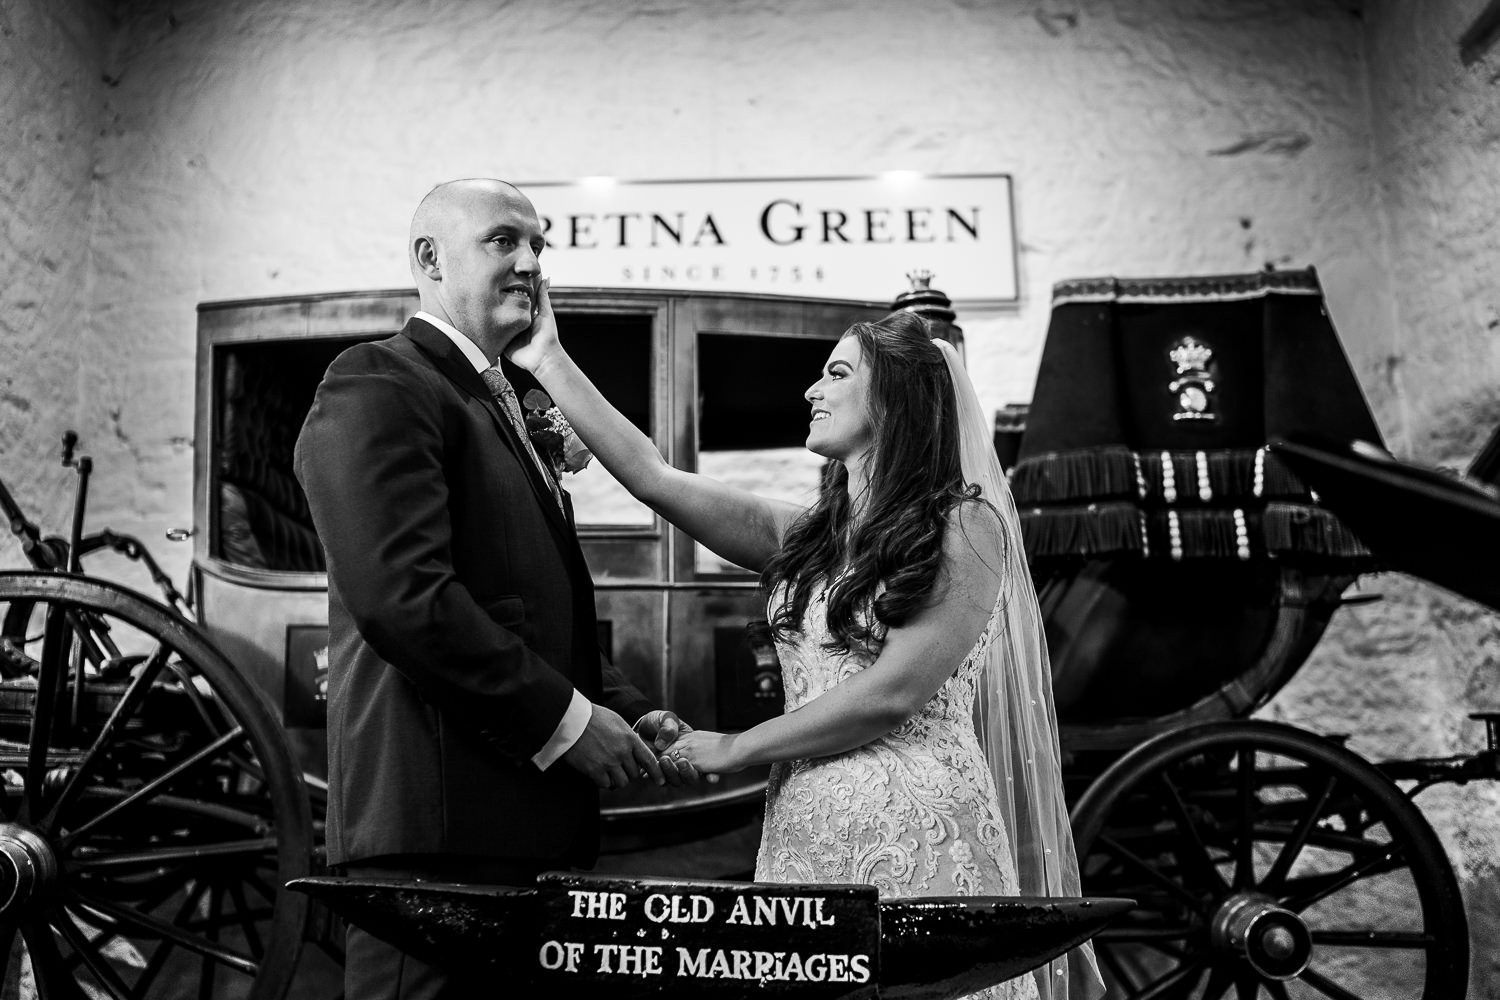 Vows at Gretna Green